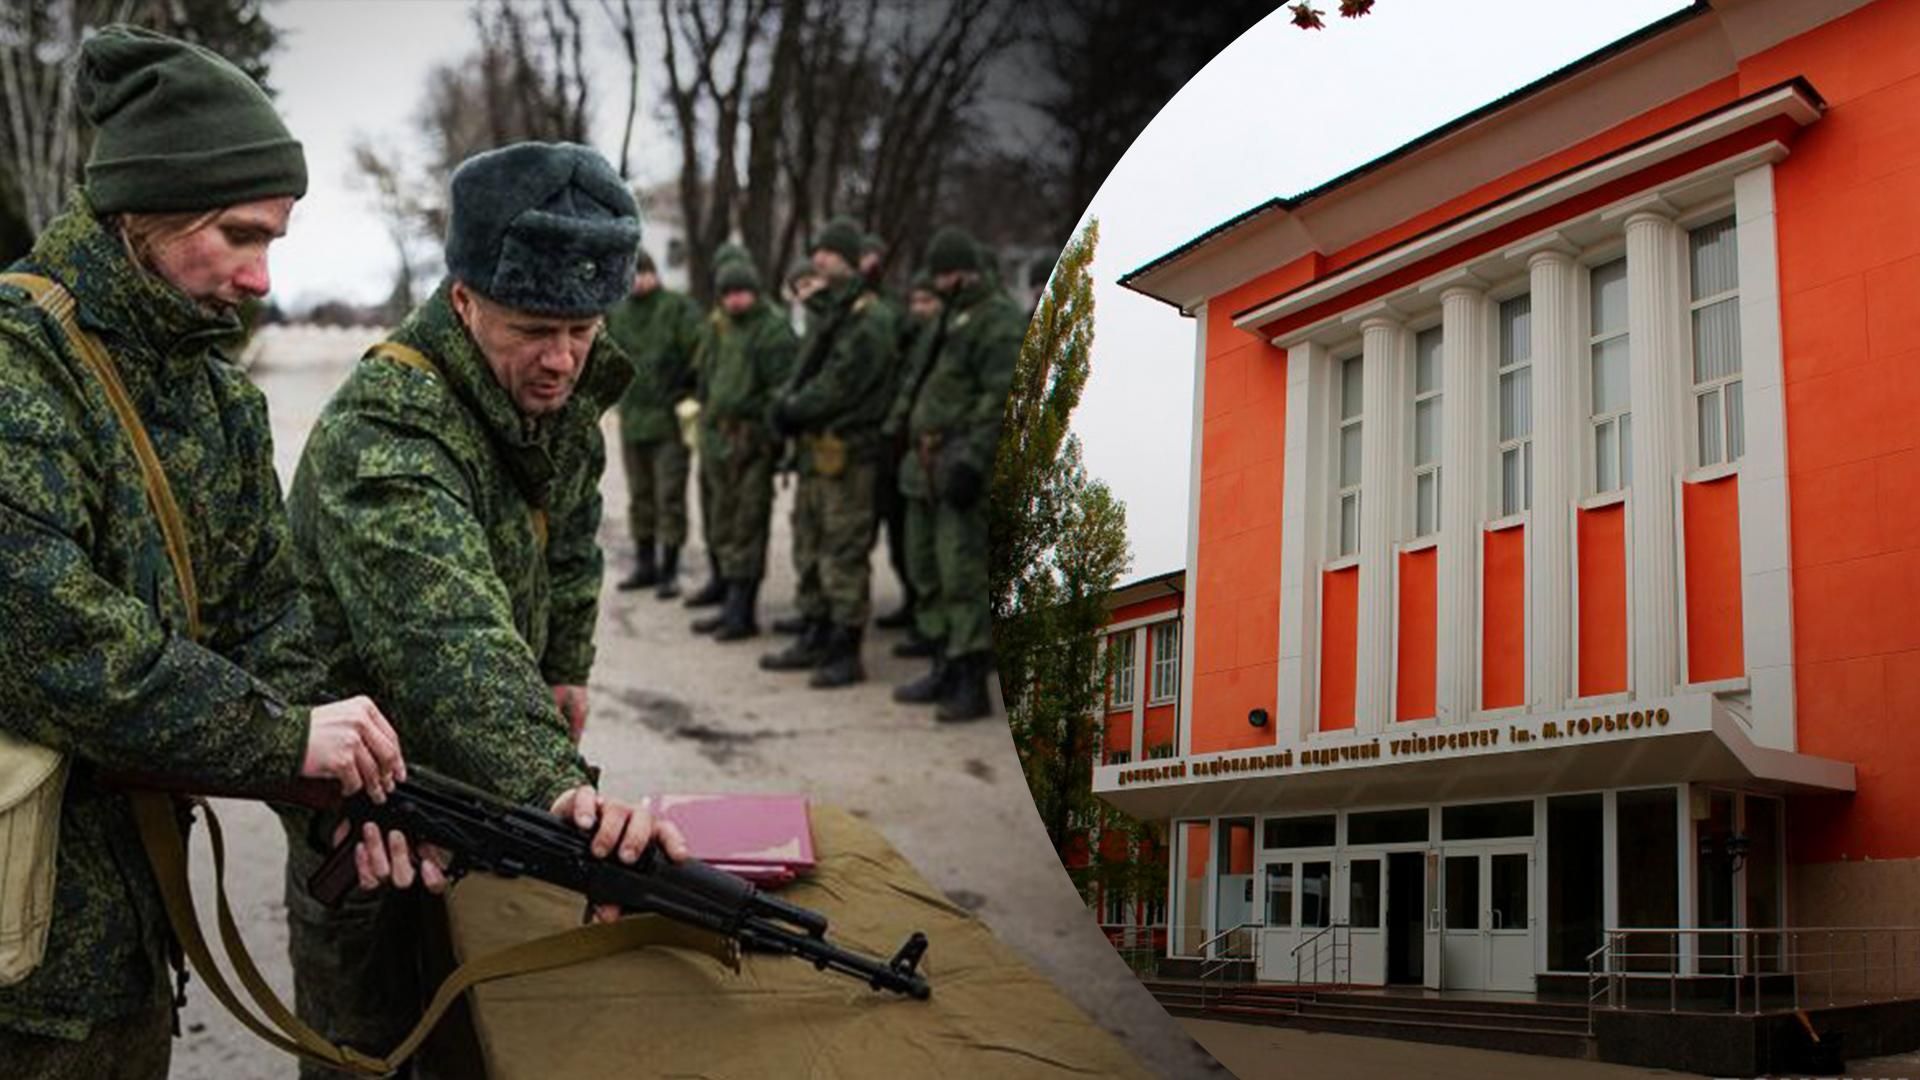 Более 100 студентов Донецкого медицинского университета насильно отправили воевать против Украины